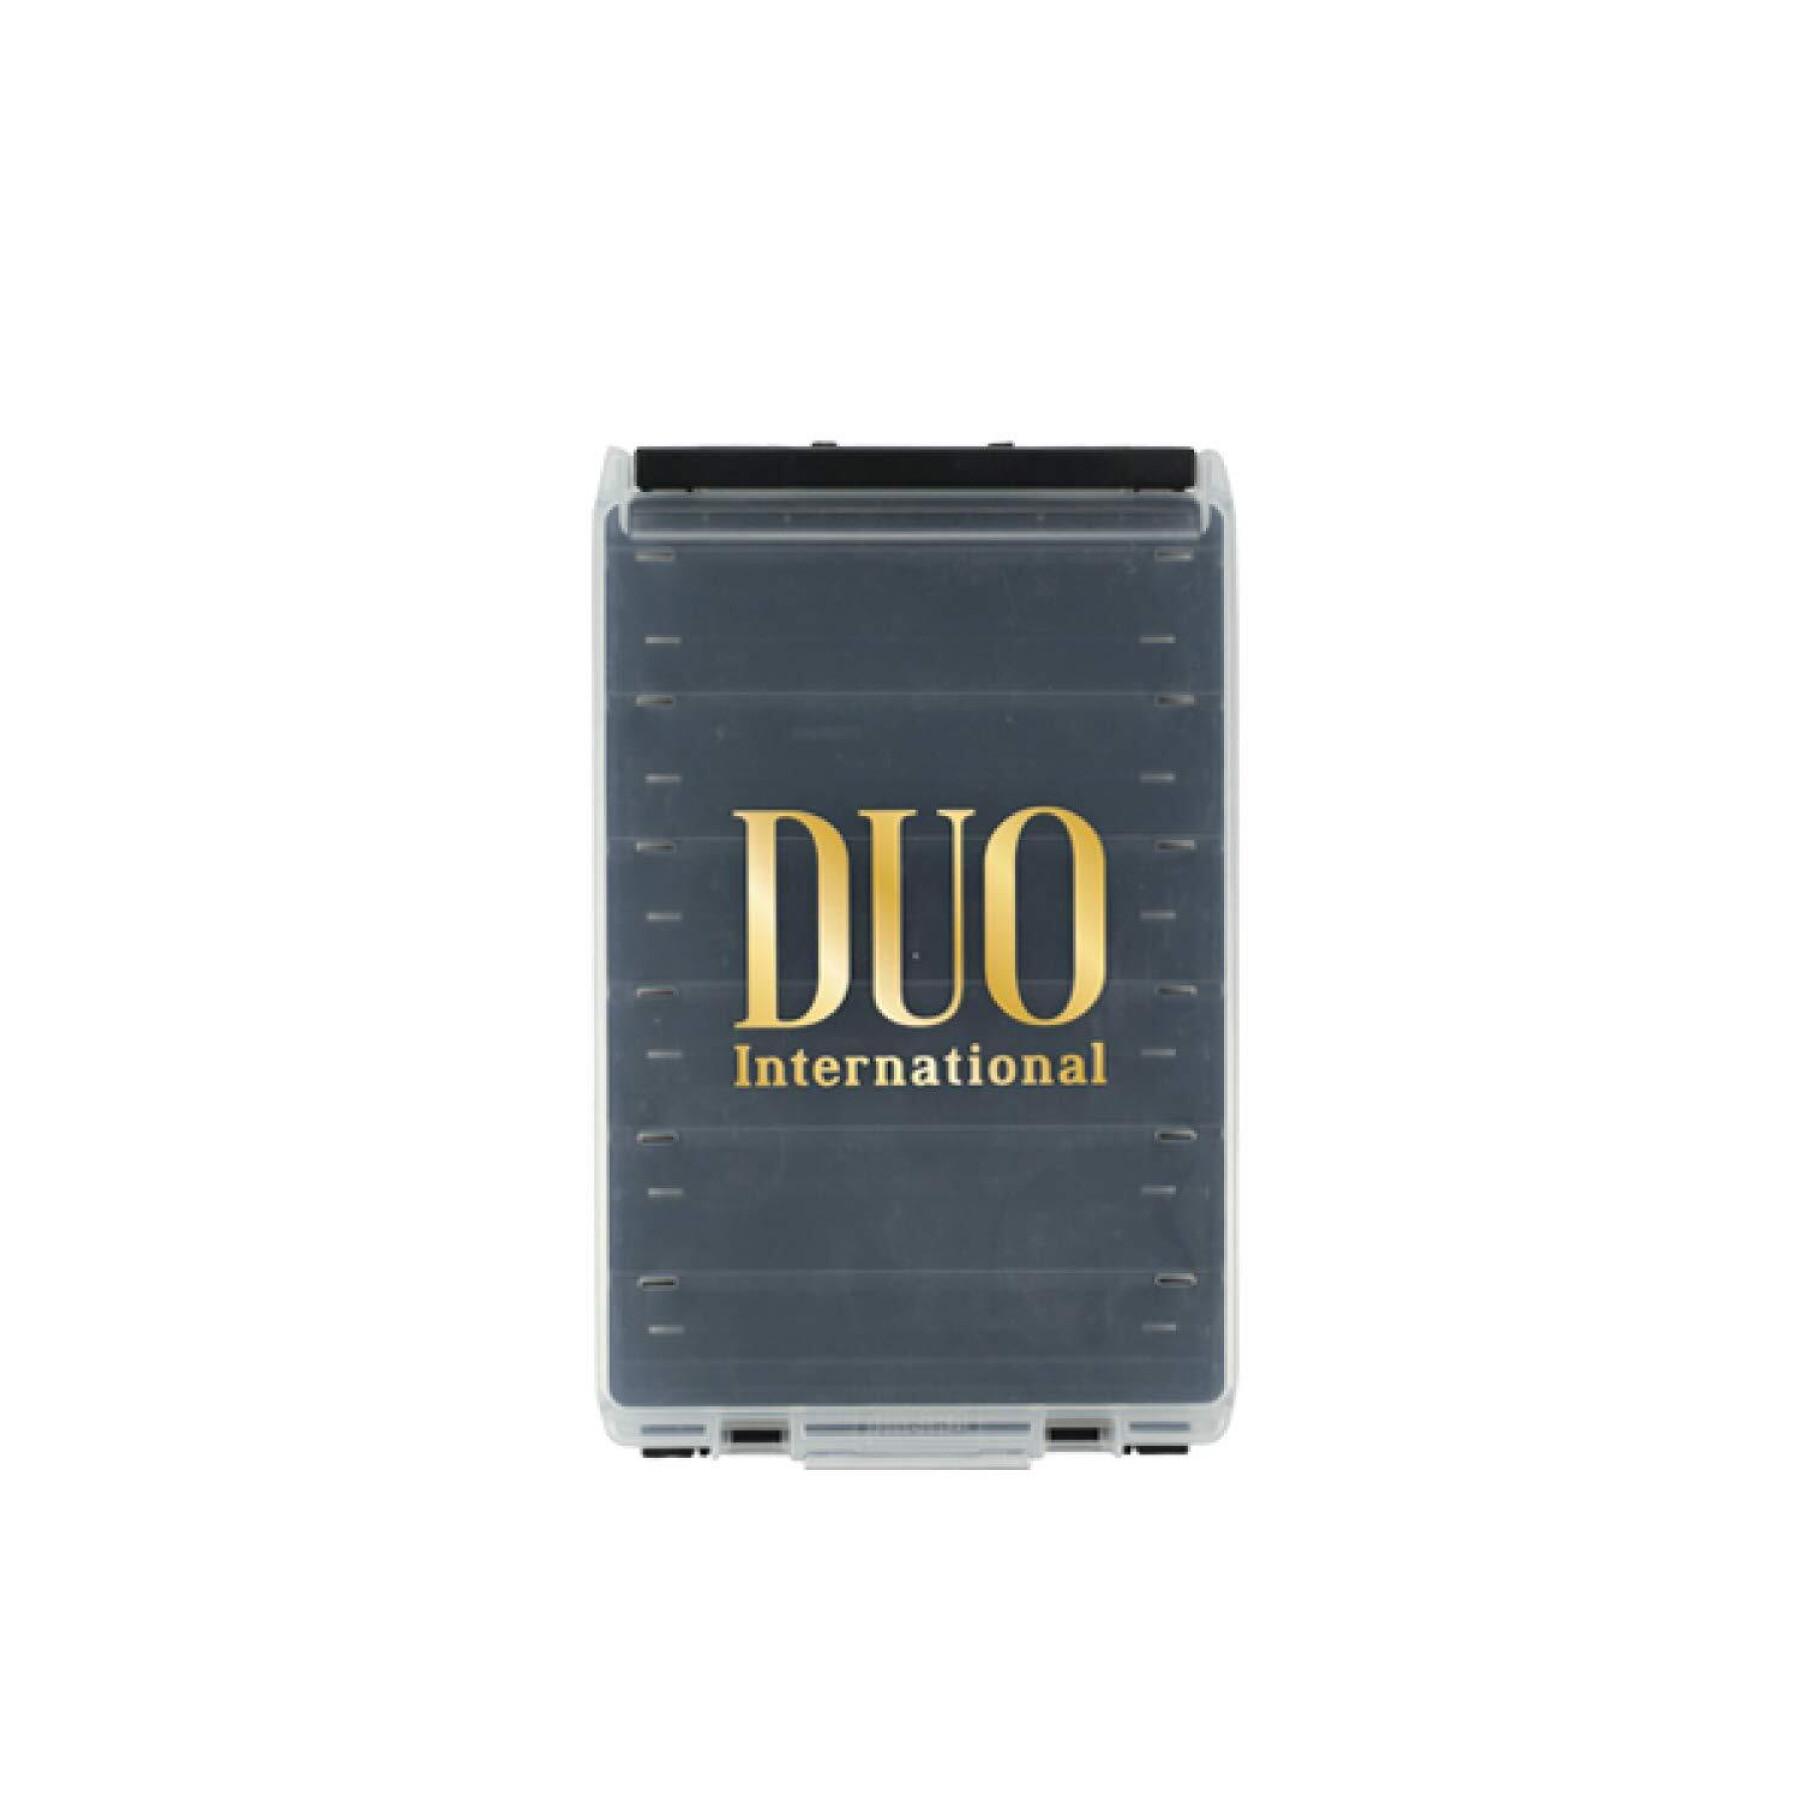 caja del señuelo Duo 120